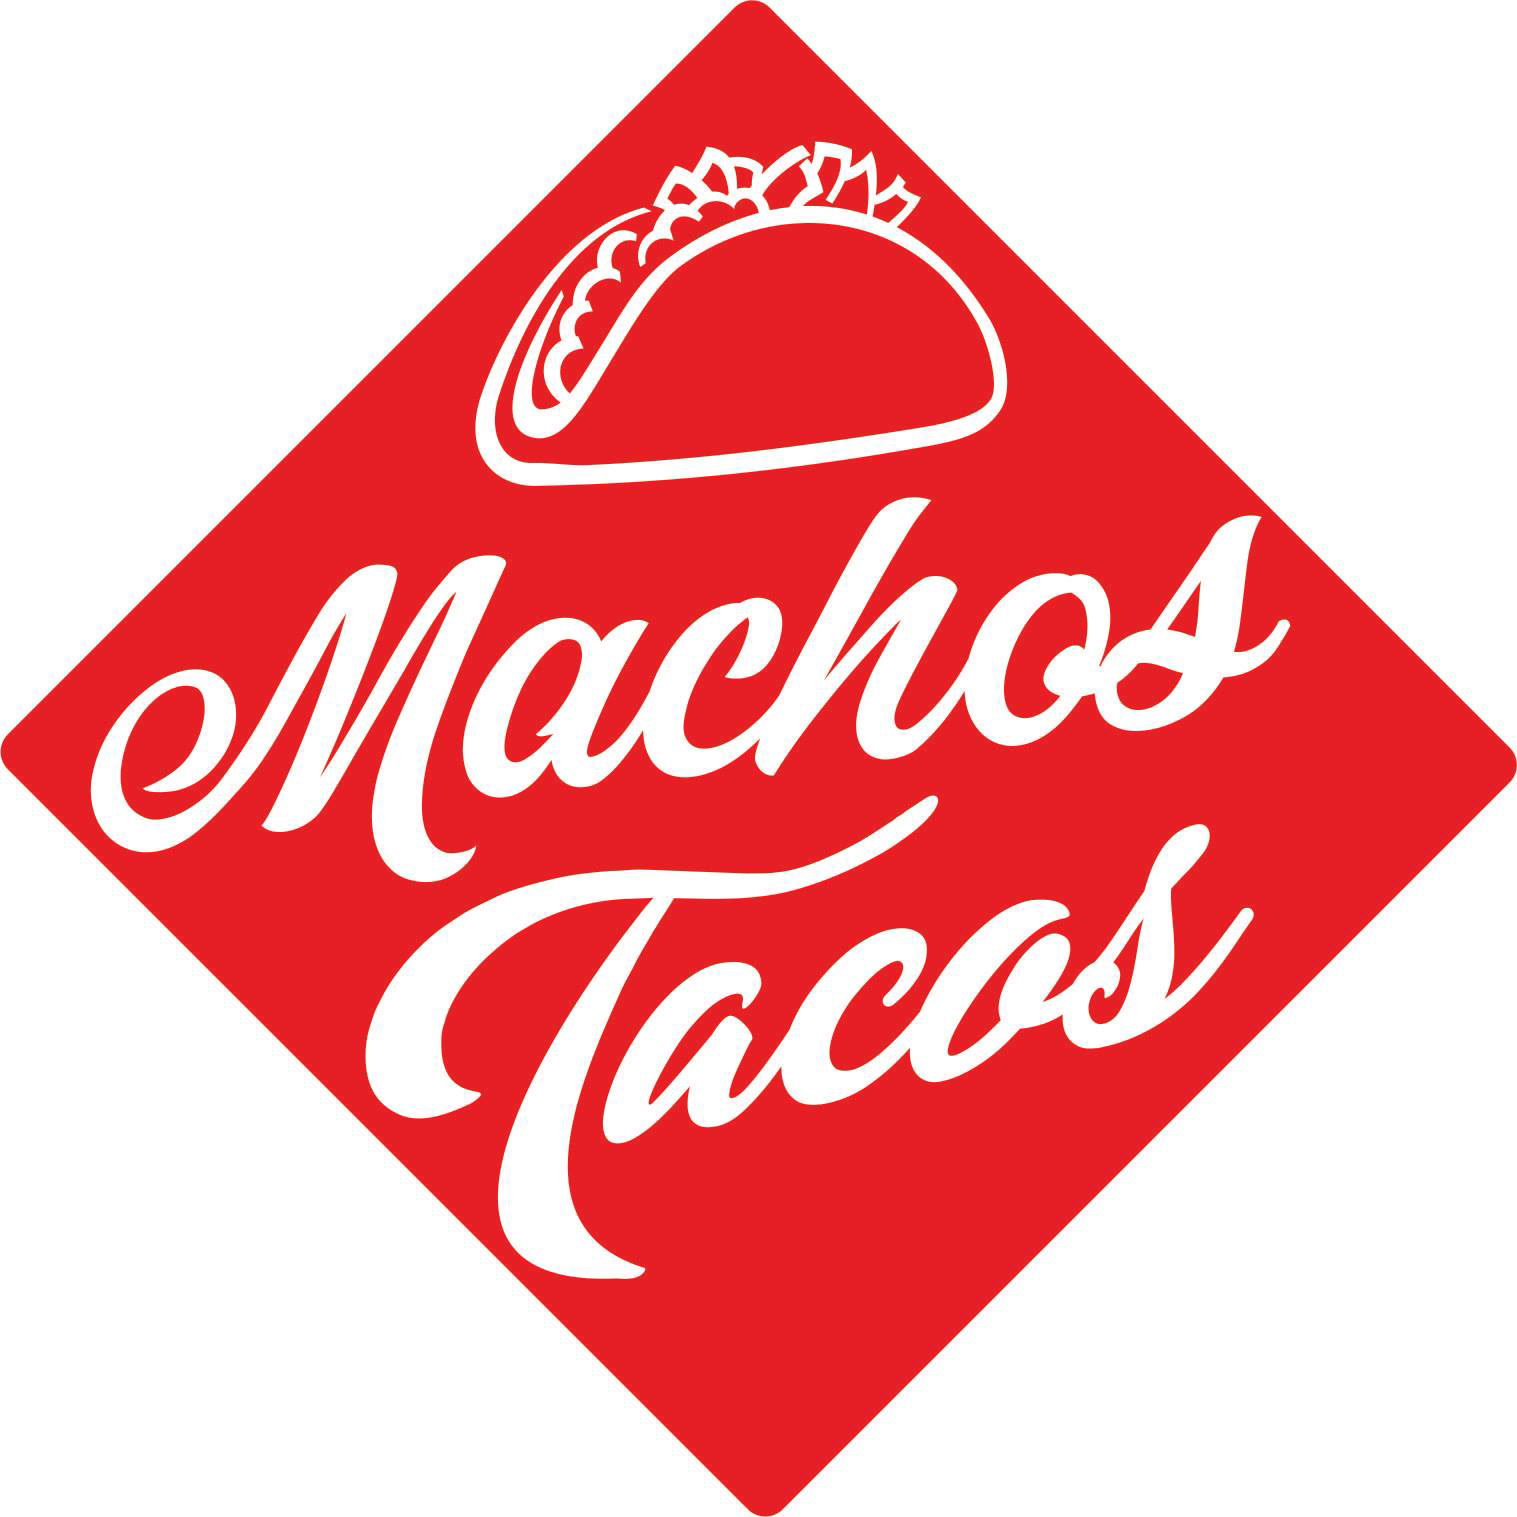 Machos Tacos